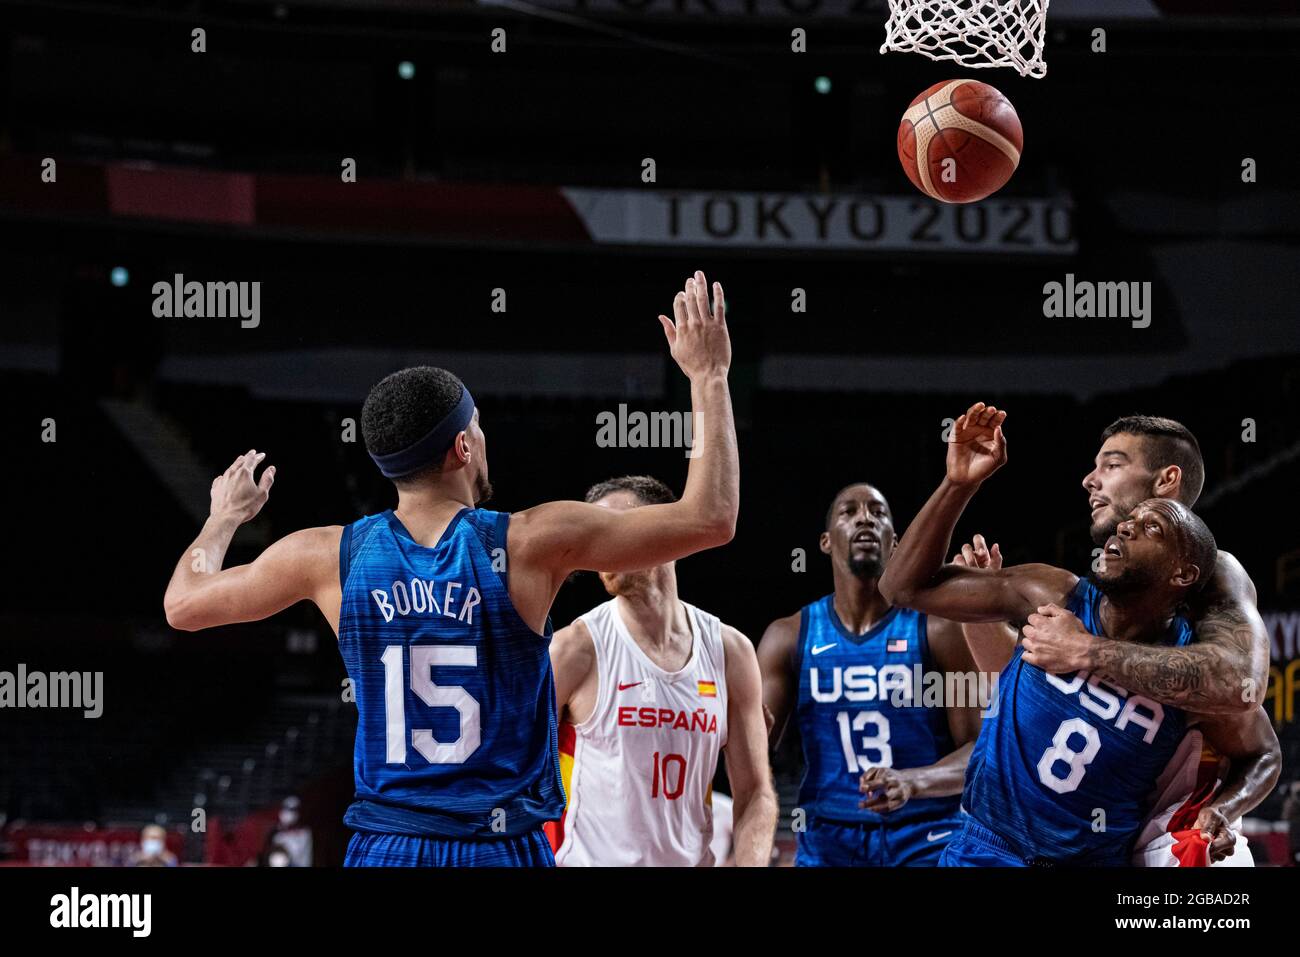 Saitama, Japon. 3 août 2021. Jeux Olympiques: Basket-ball, Espagne contre les Etats-Unis, à Saitama Super Arena. © ABEL F. ROS / Alamy Live News Banque D'Images